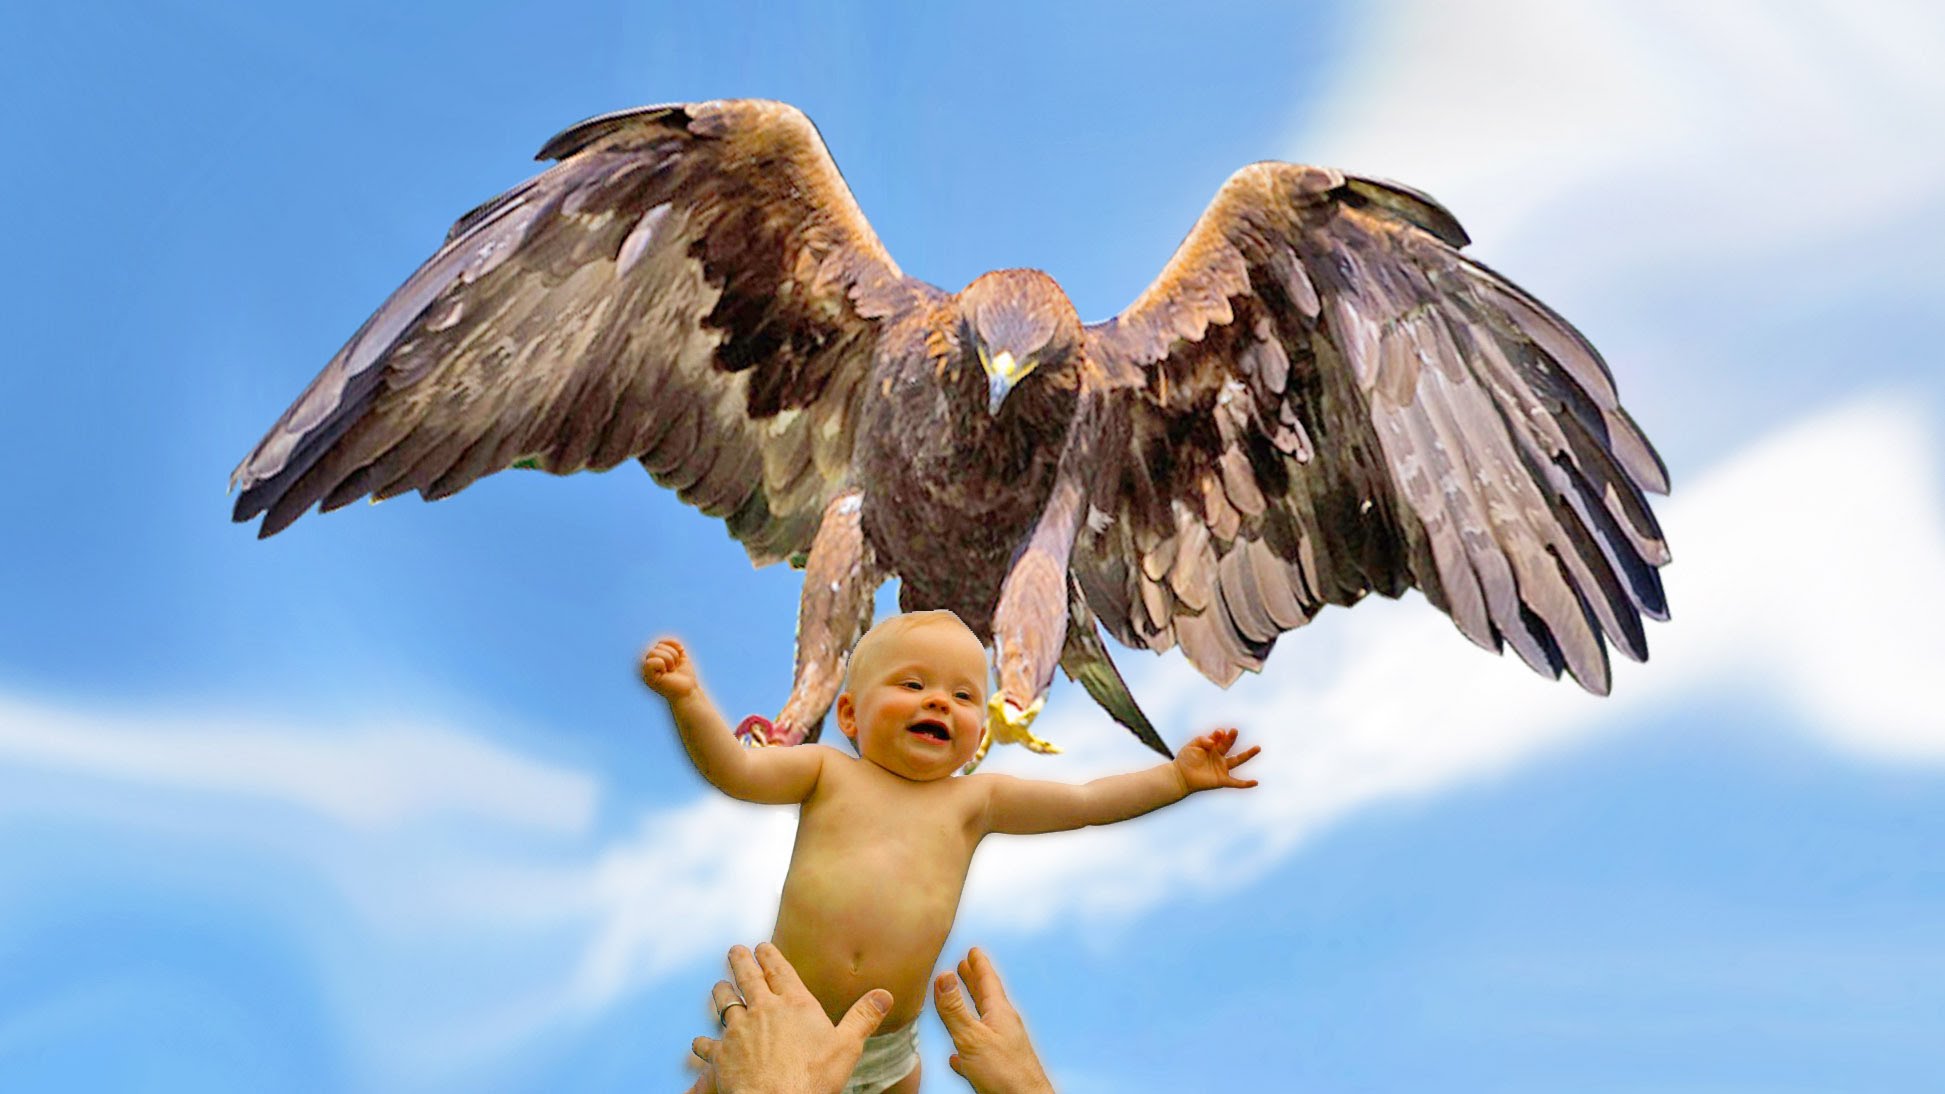 Eagle Attacks! (Real or Fake?) Bald Eagle, Golden Eagle Falcon - YouTube